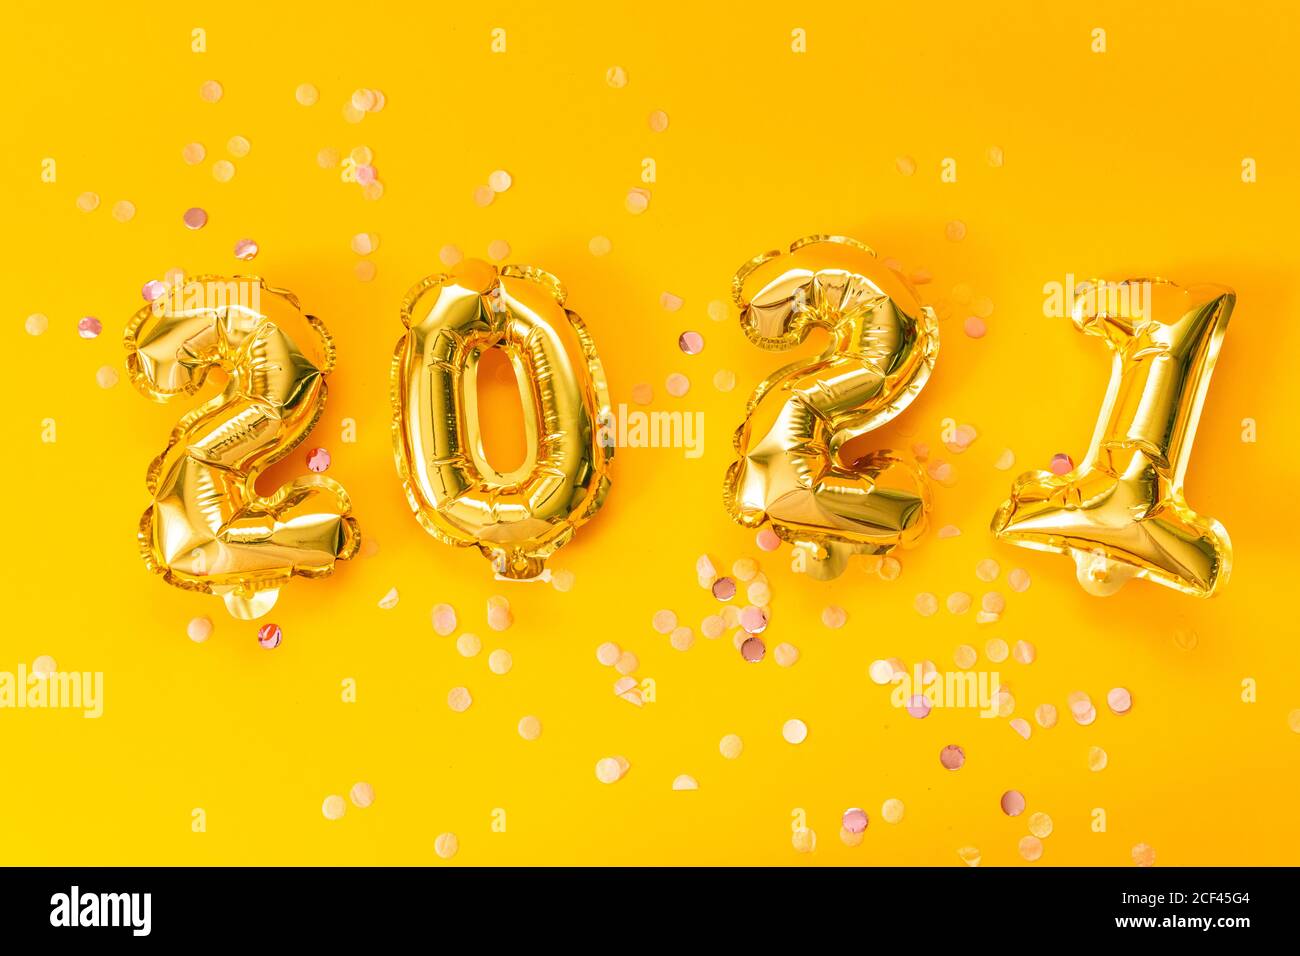 Bonne célébration du nouvel an 2021. Ballons or lumineux avec étoiles brillantes sur fond jaune. Noël et fête du nouvel an. Banque D'Images